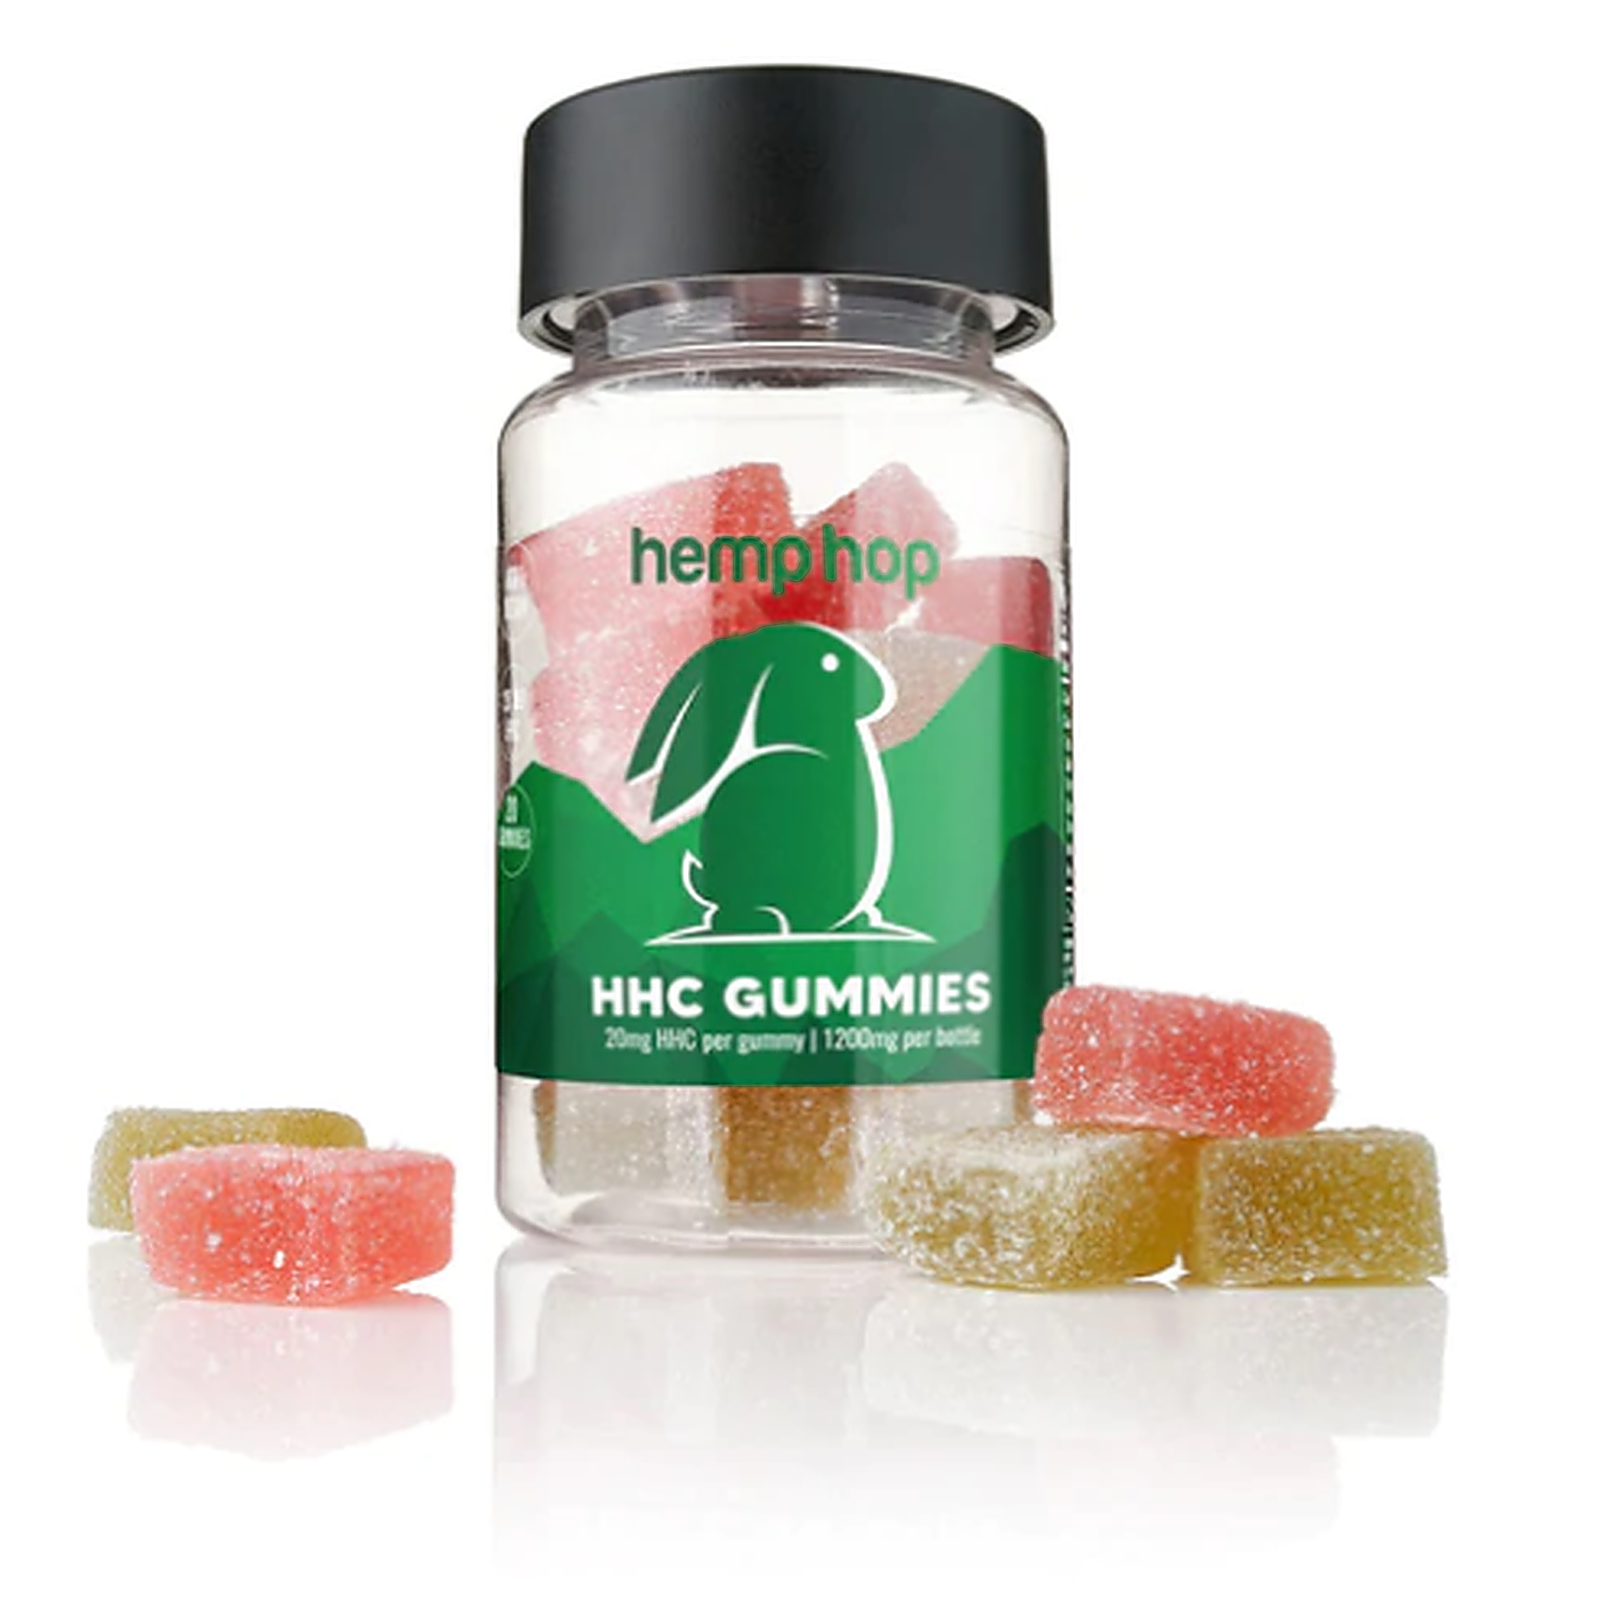 Hemp Hop: HHC Gummies | Leafly